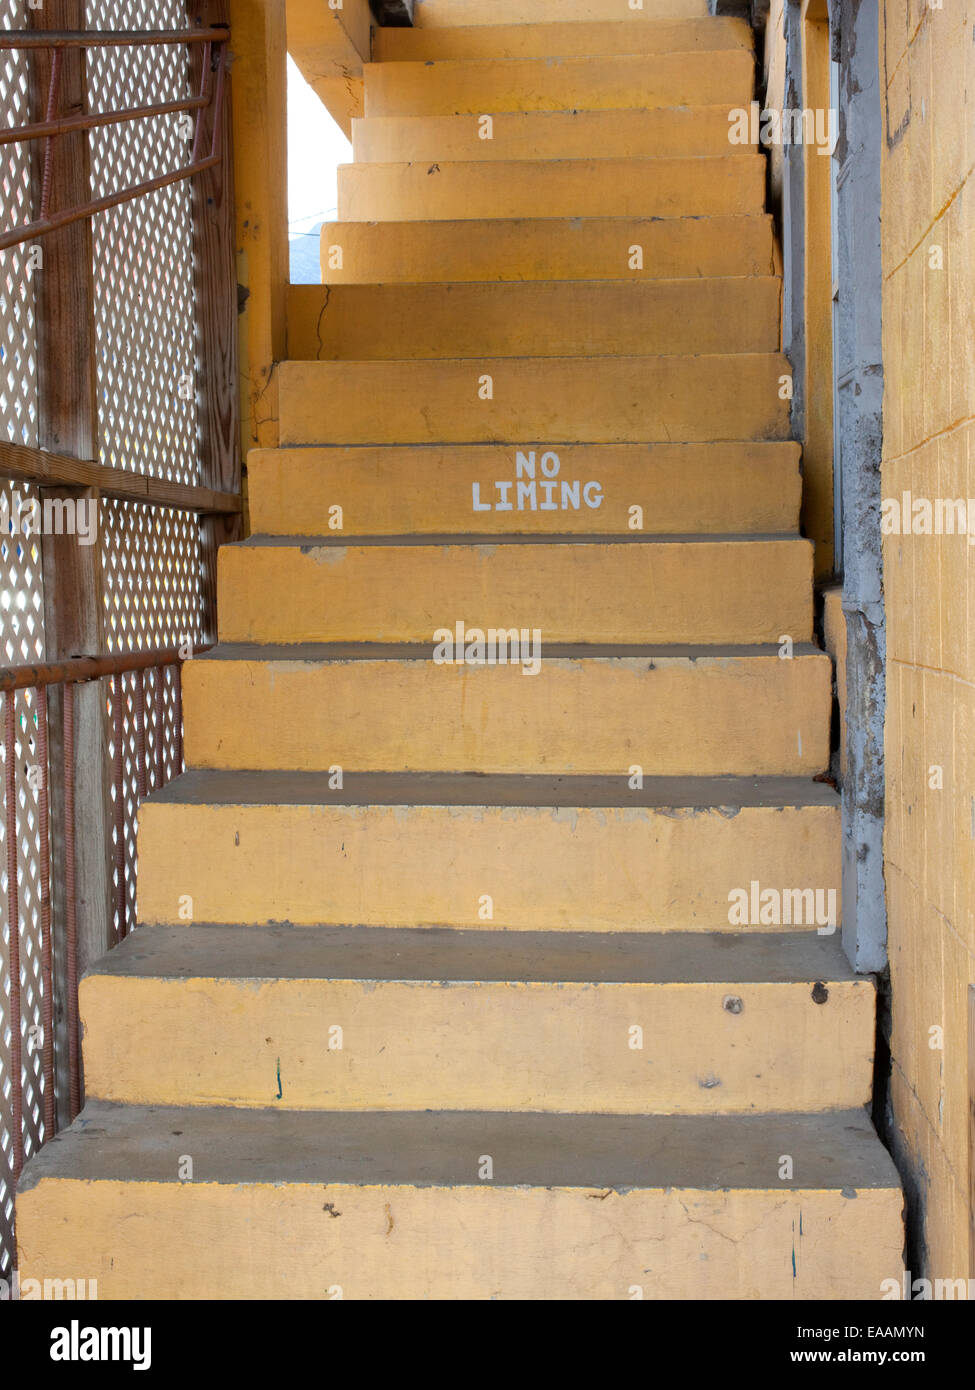 Treppen mit "keine Kalkung" Zeichen Stockfoto